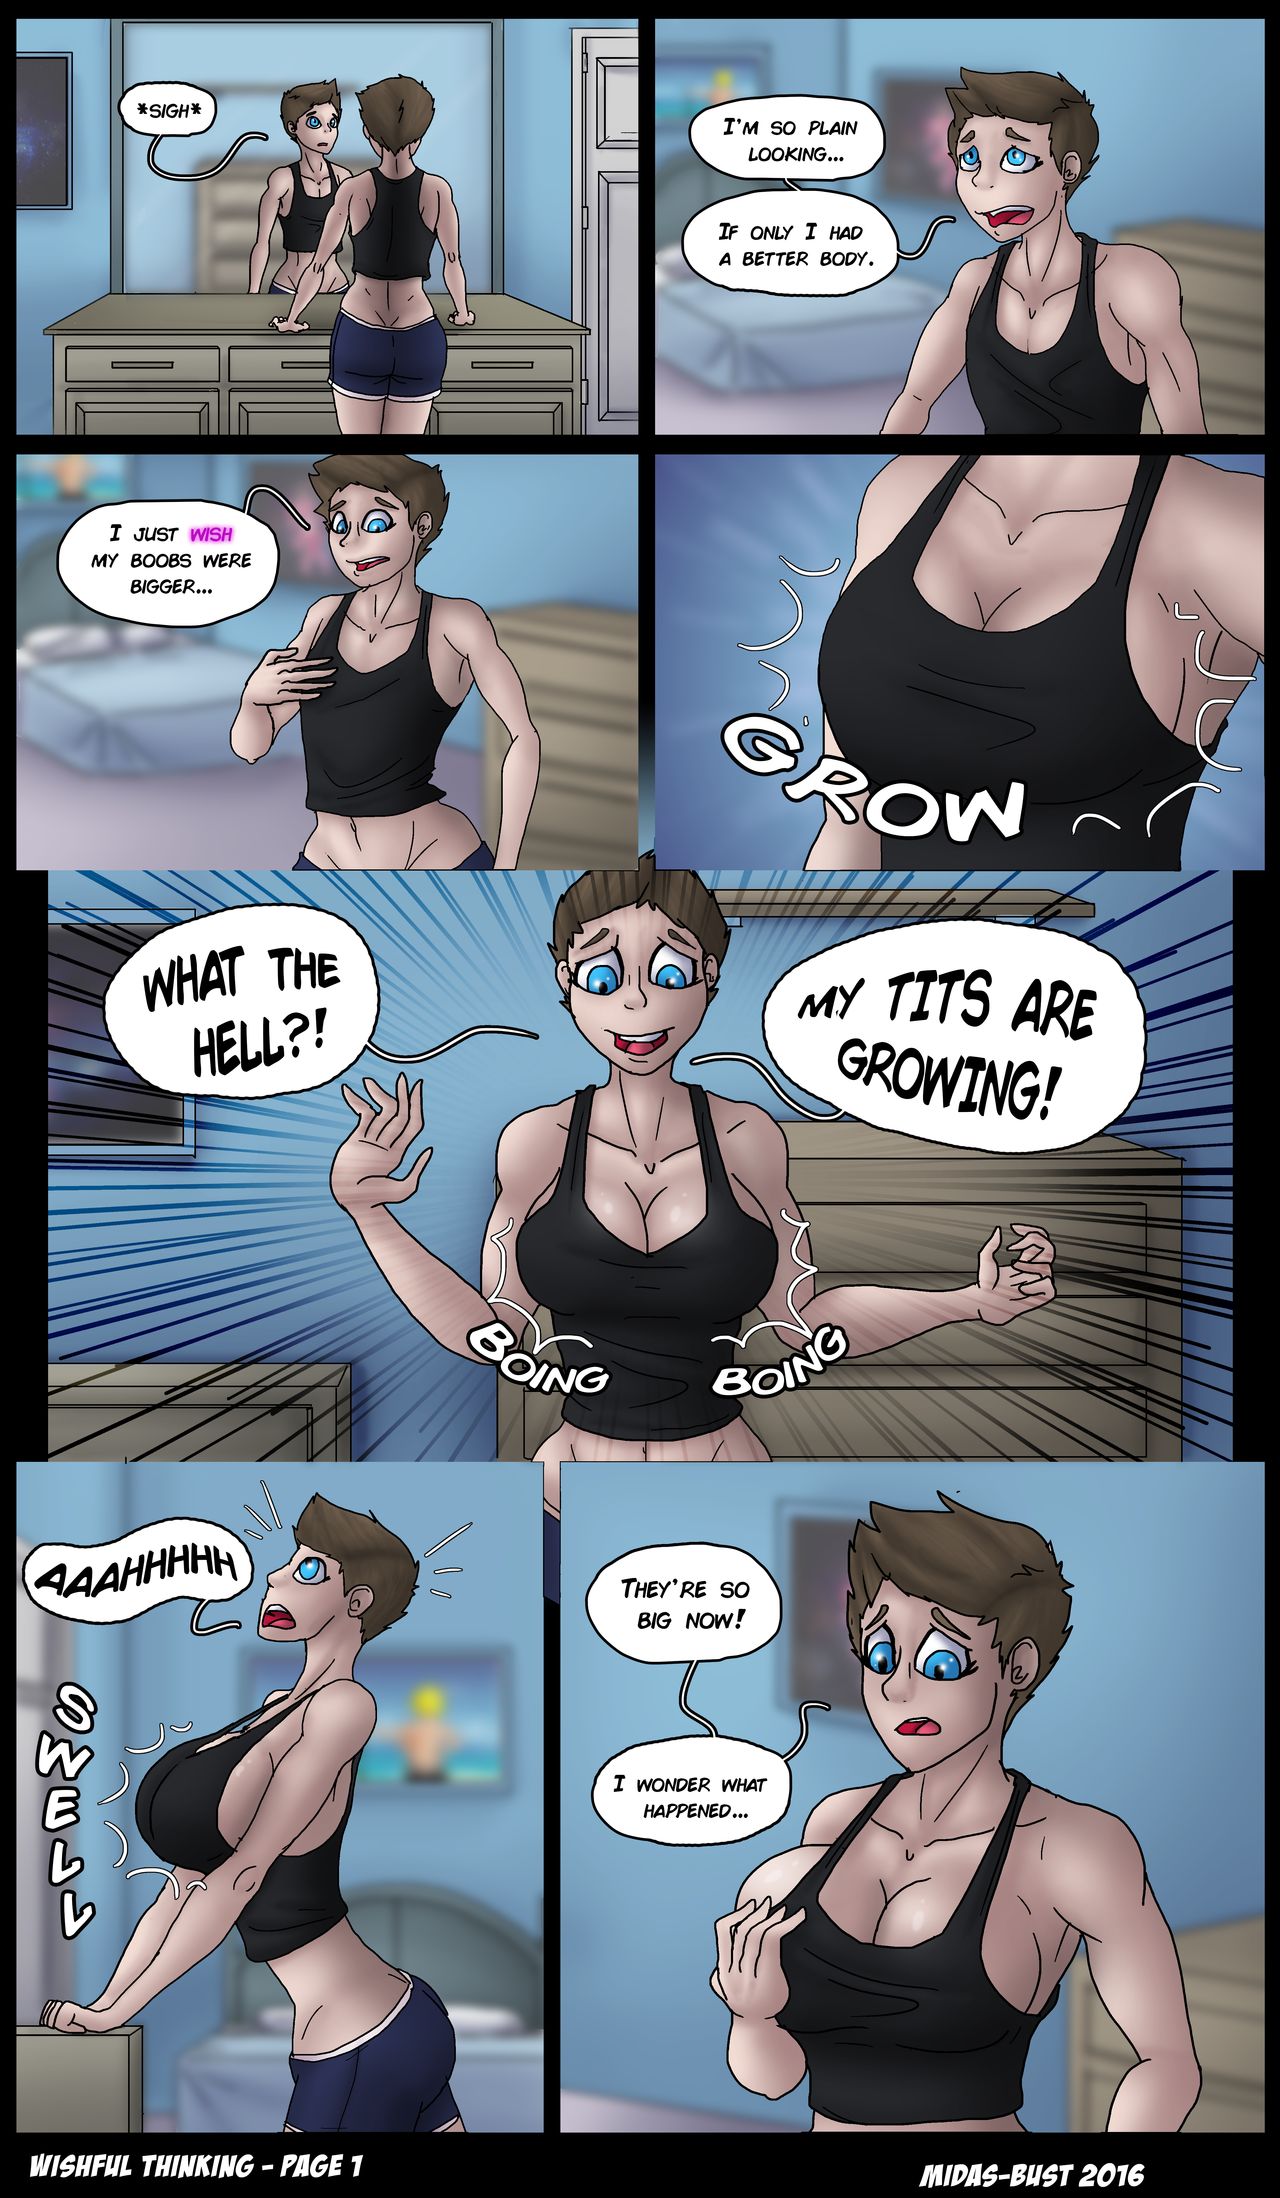 Growing boobs cartoon